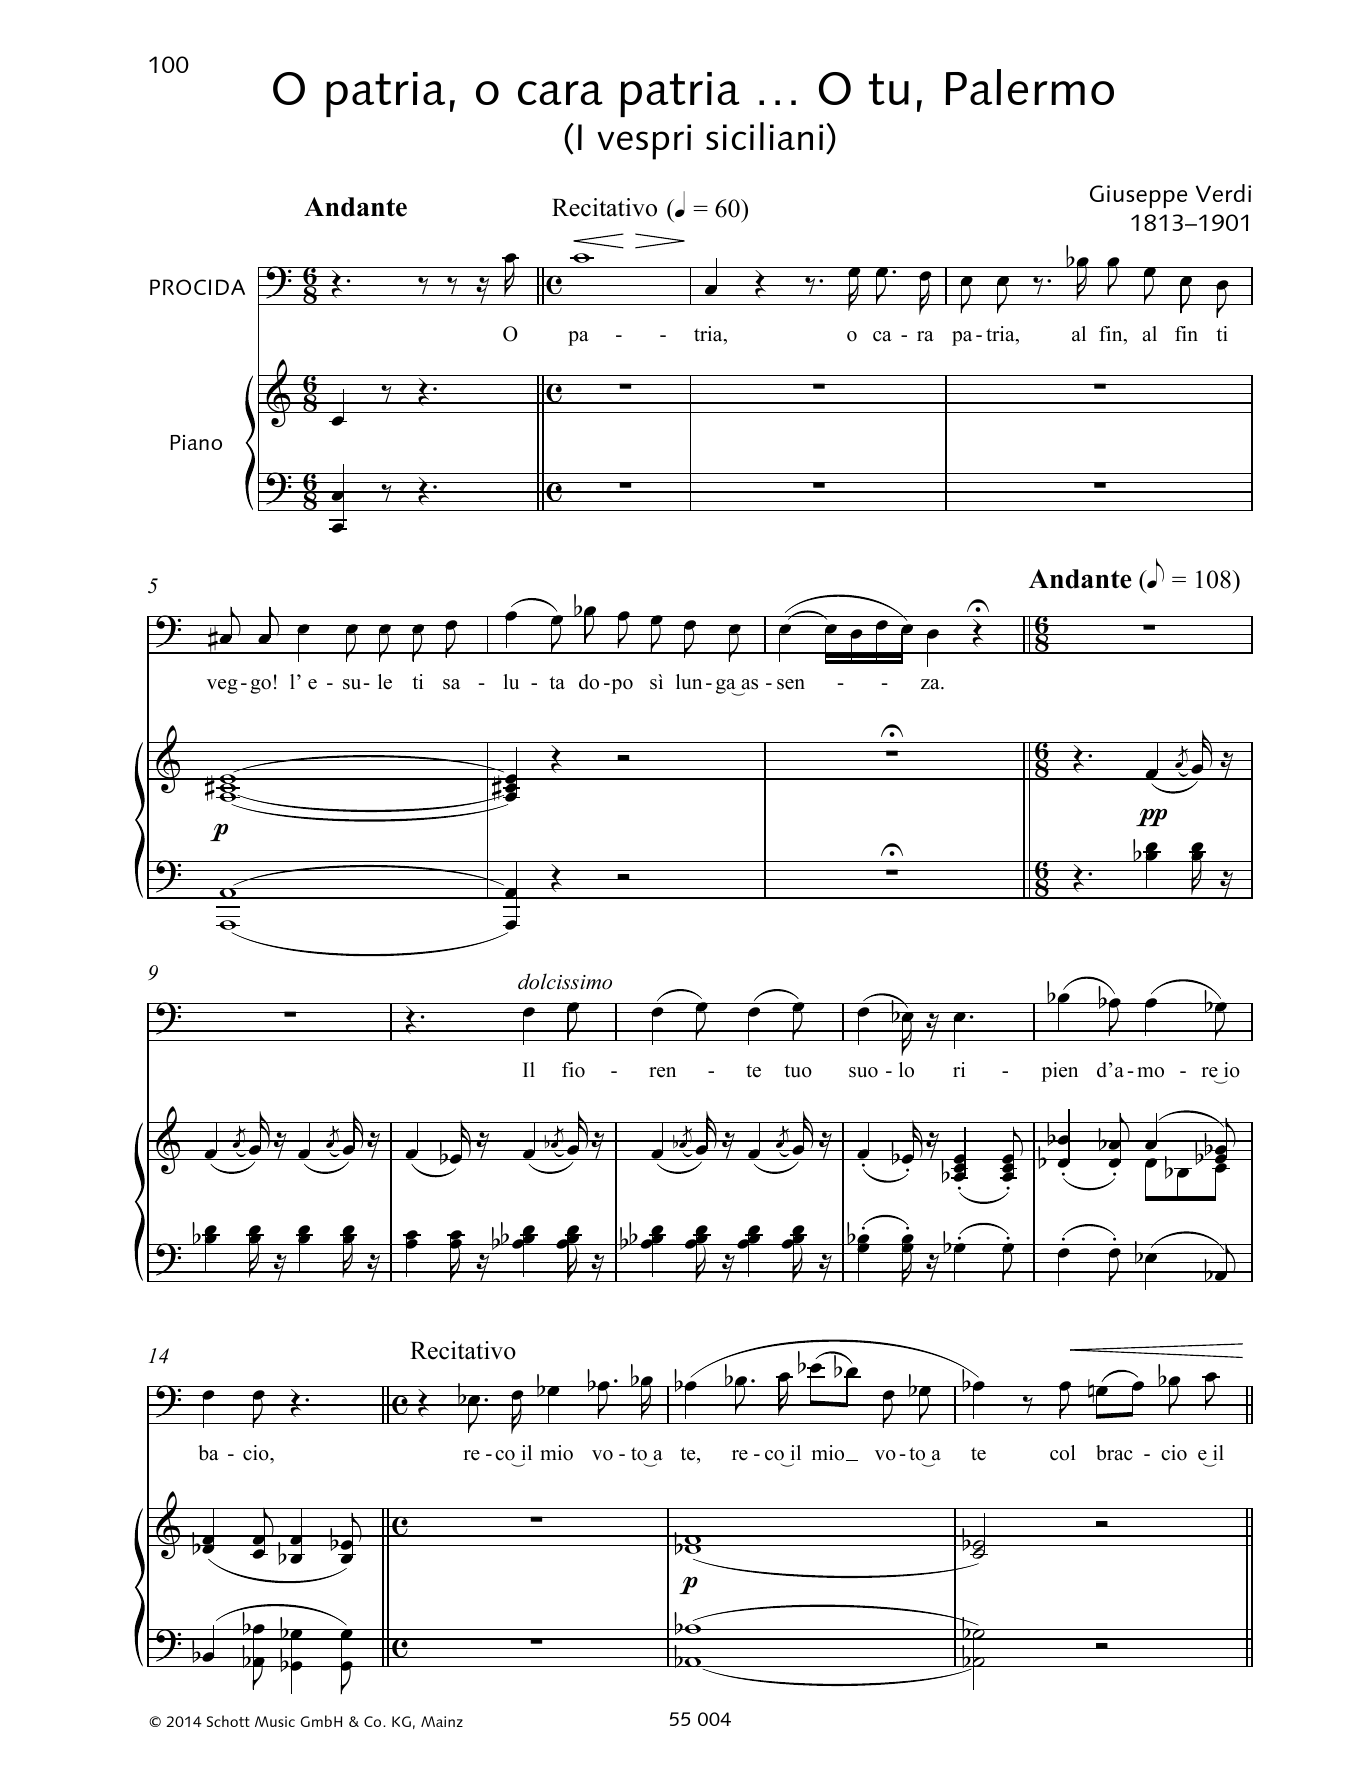 Giuseppe Verdi O patria, o cara patria... O tu, Palermo Sheet Music Notes & Chords for Piano & Vocal - Download or Print PDF